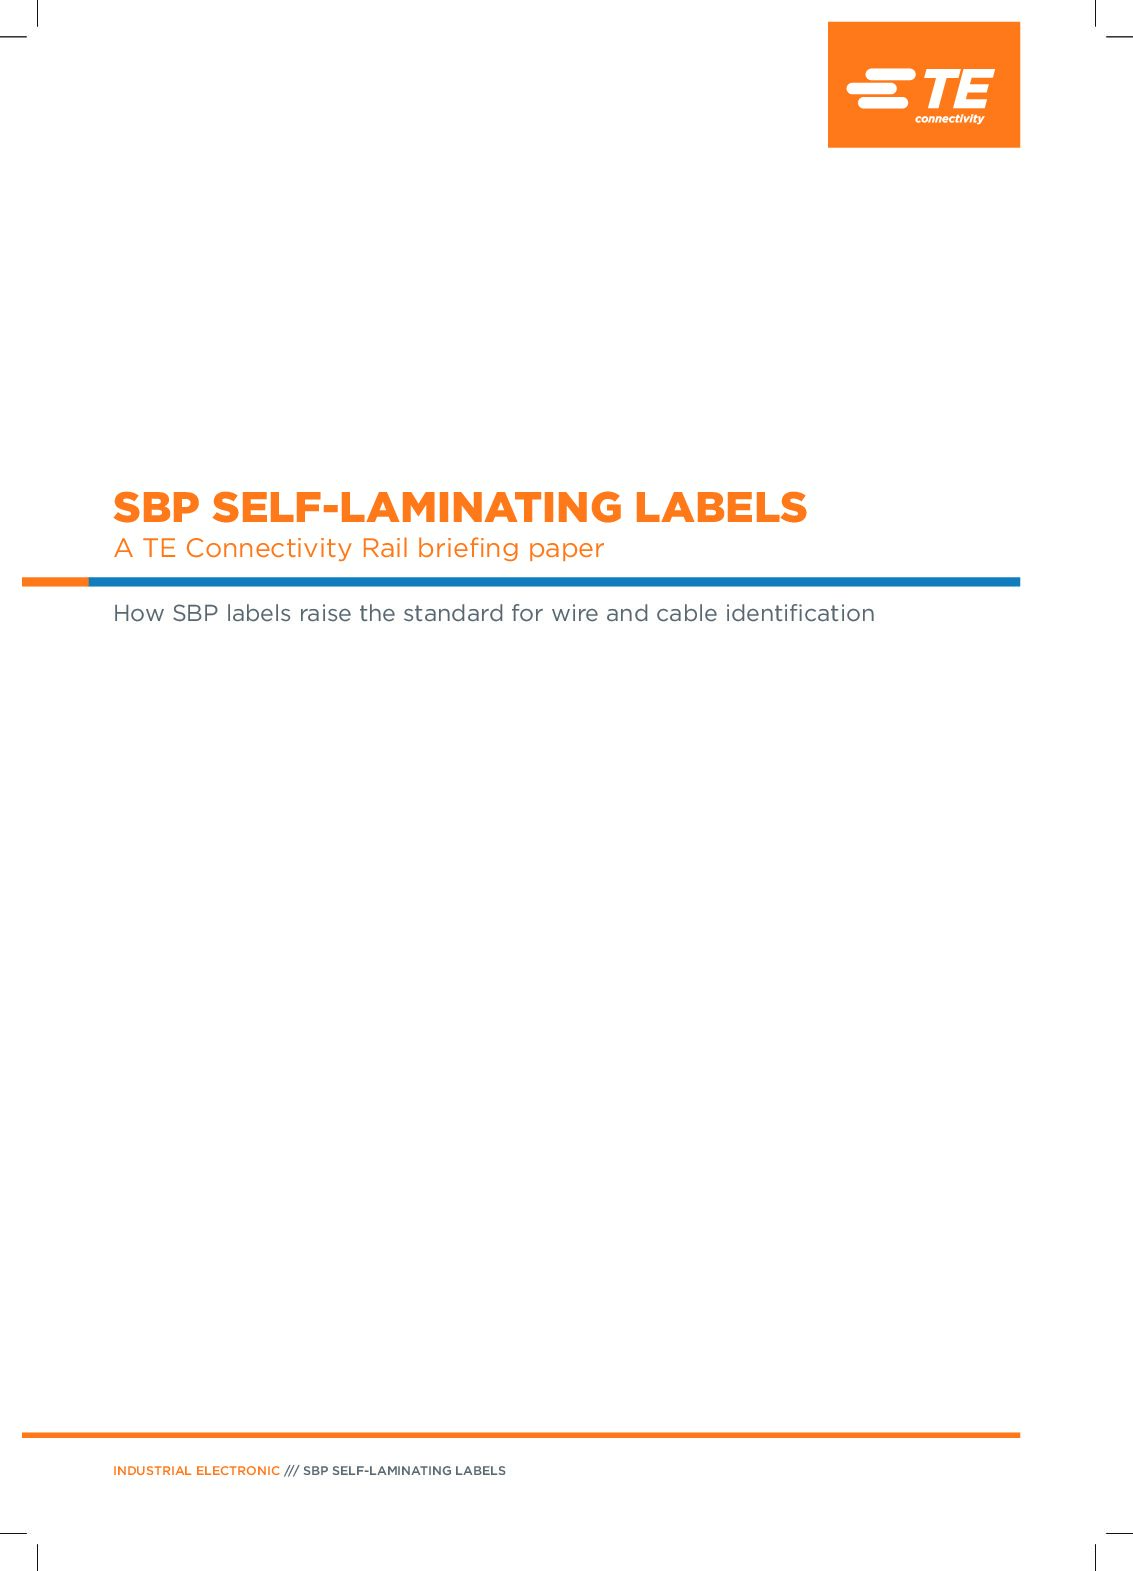 SBP Self-Laminating Labels